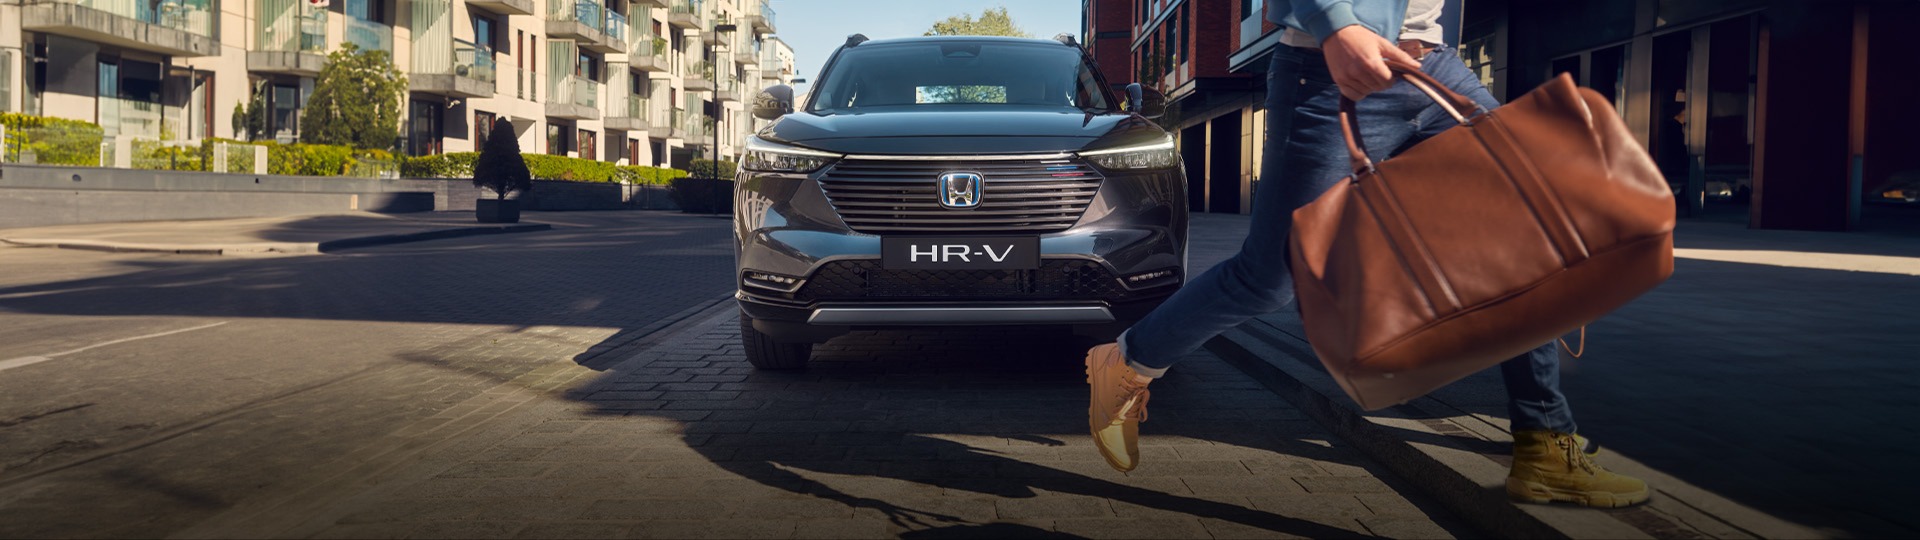 Honda Plaza  Bora Hayalinizdeki HR-V'ye giden yolu kısalttık.